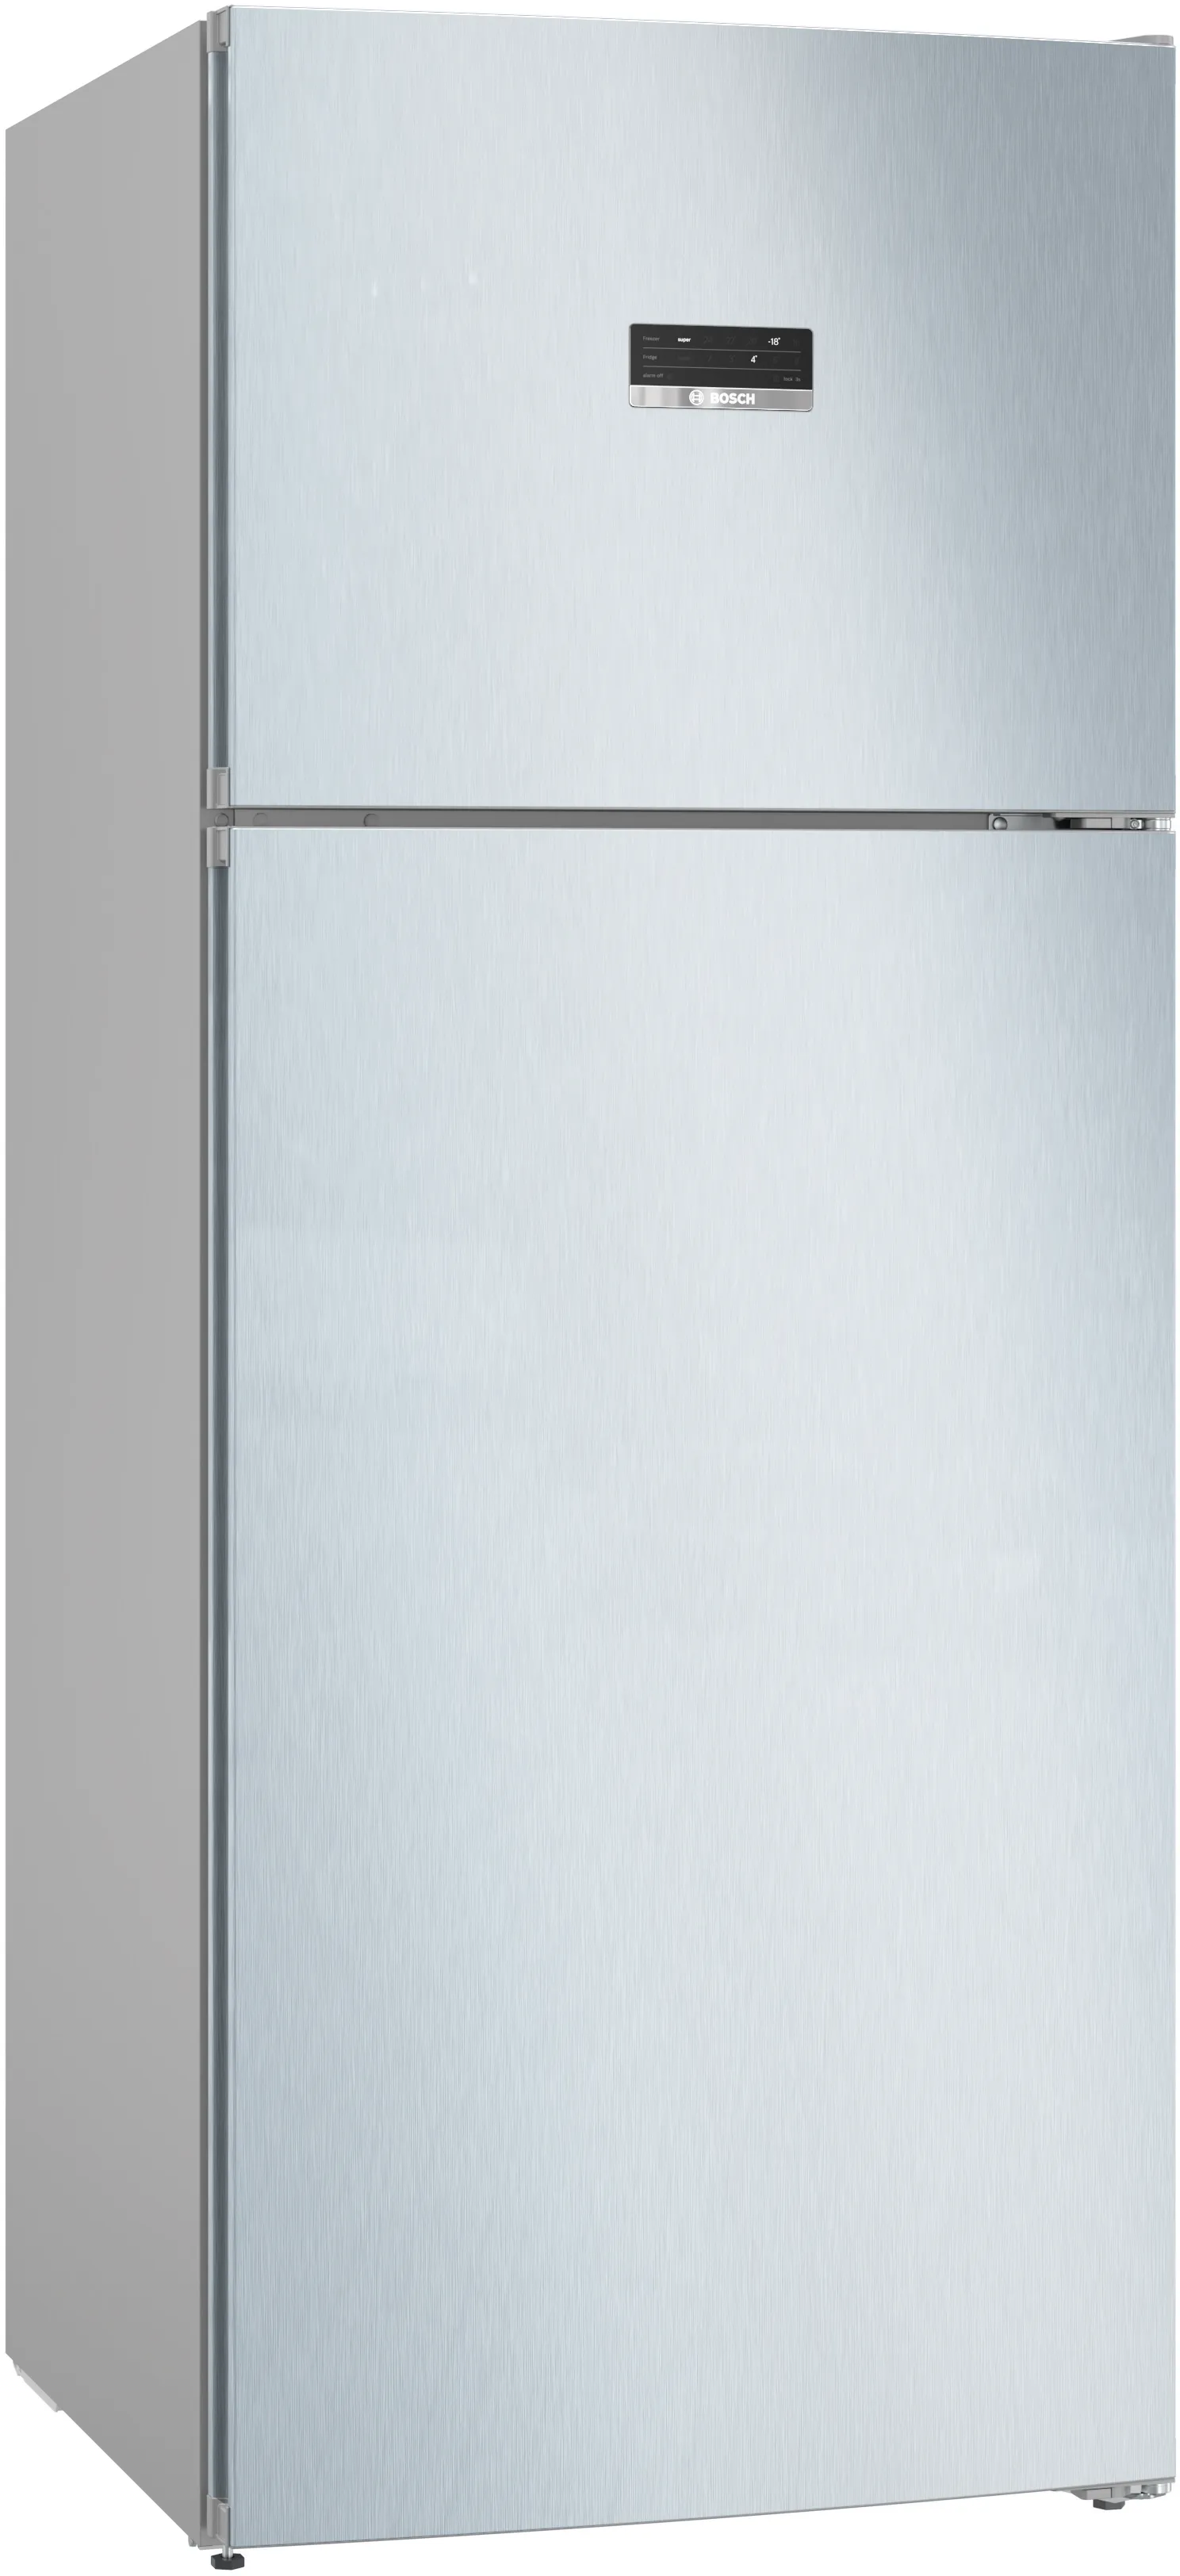 Серия 4 Отдельностоящий холодильник с верхней морозильной камерой 186 x 75 cm Под нержавеющую сталь 